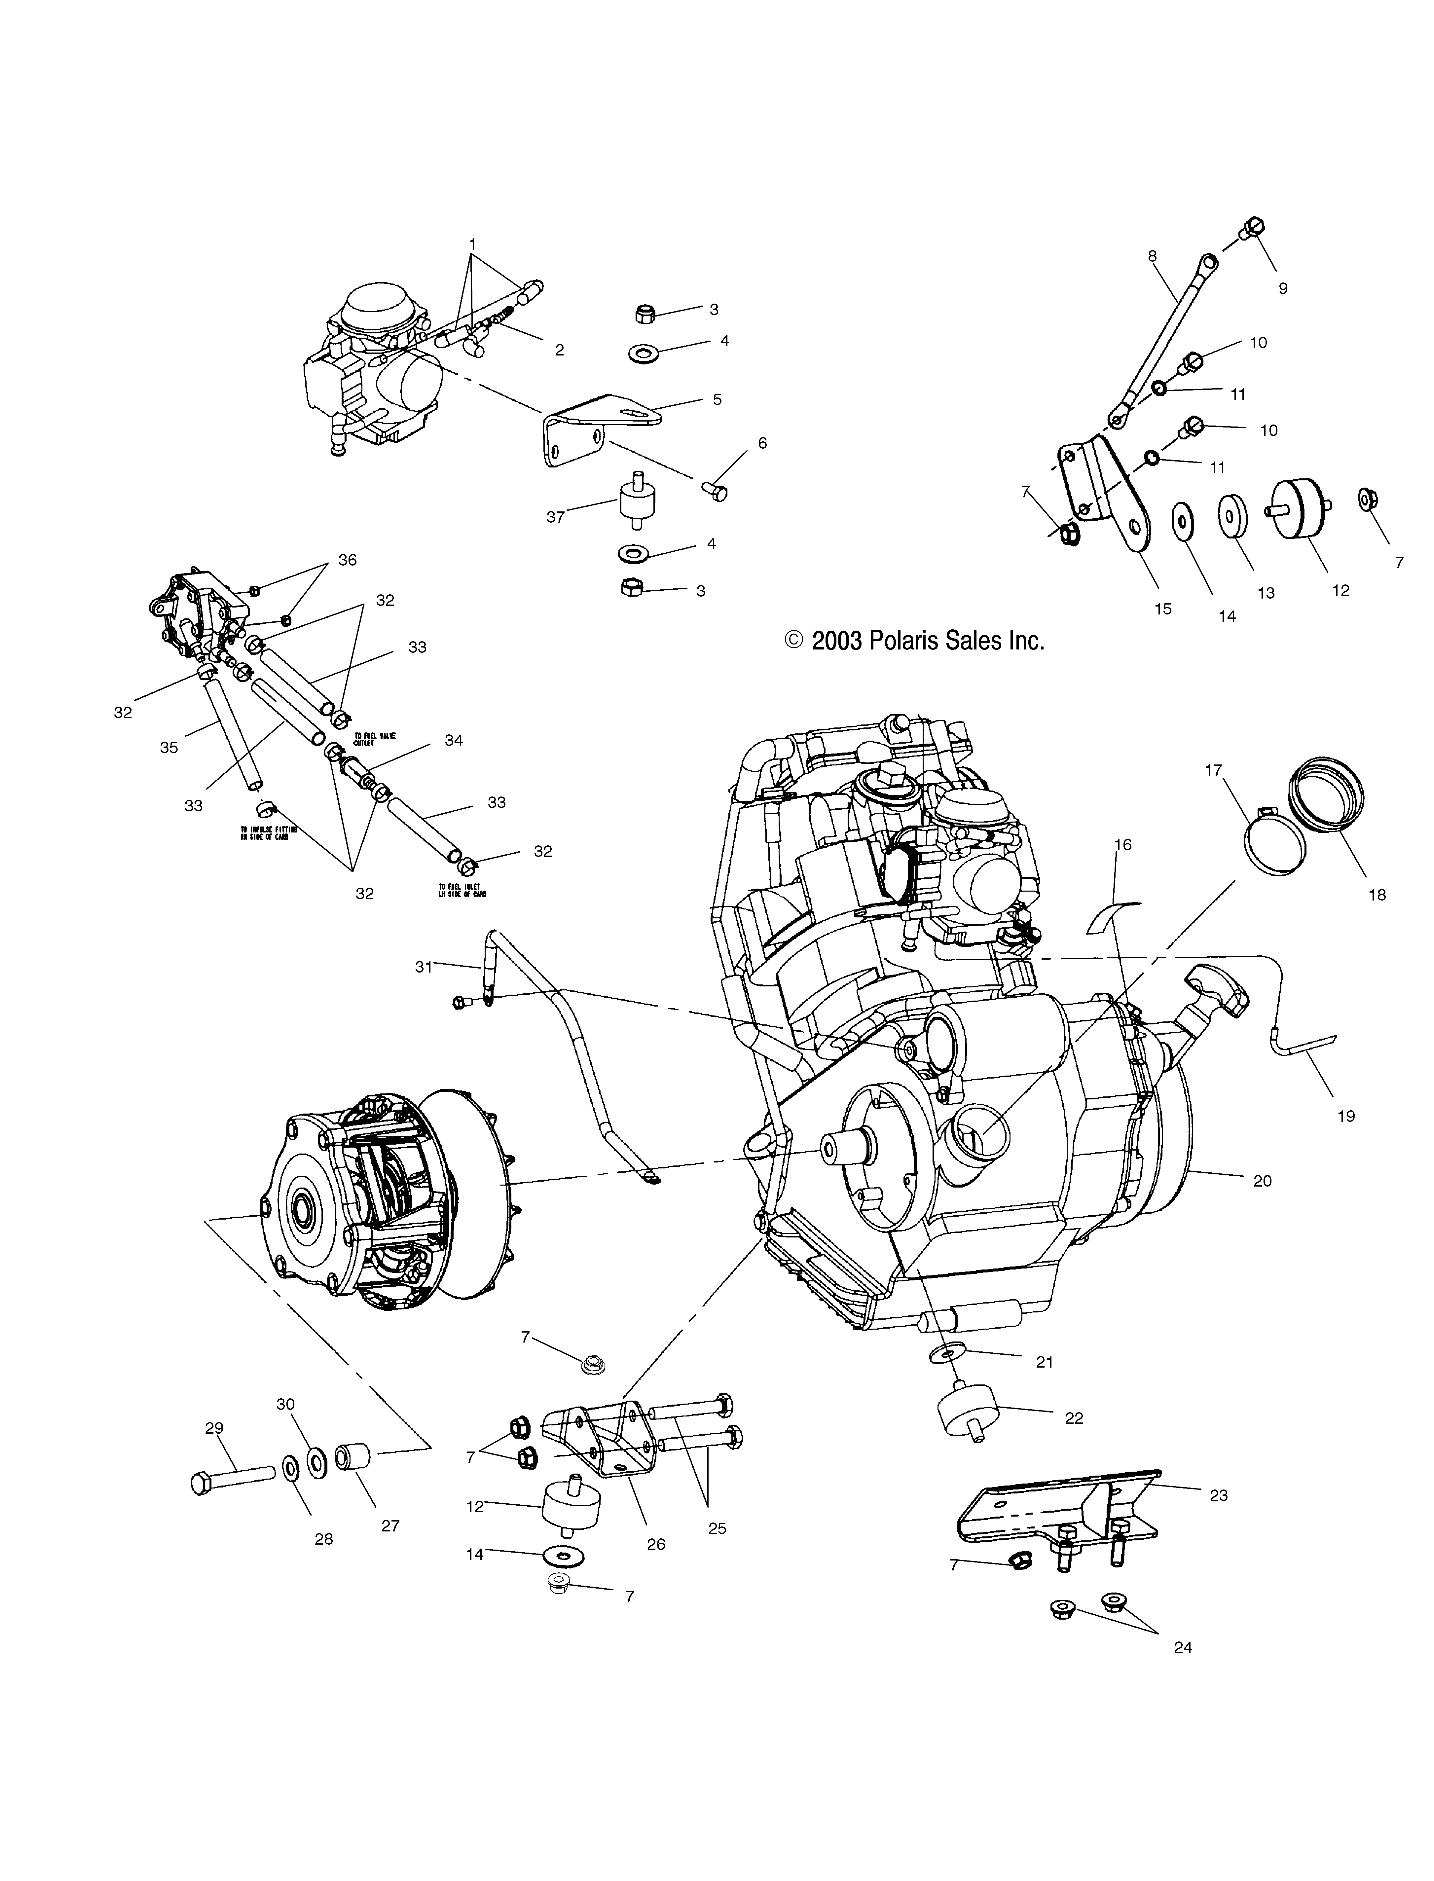 Foto diagrama Polaris que contem a peça 5243747-067